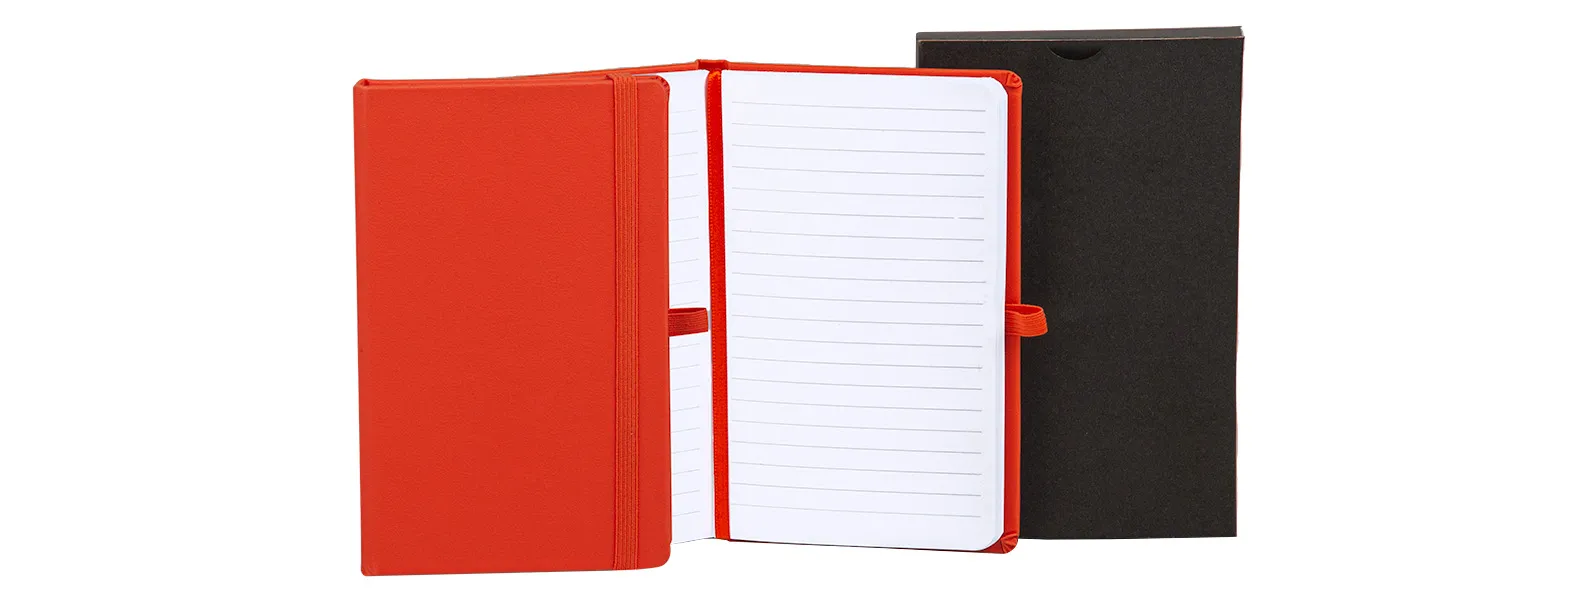 Caderno para anotações laranja com capa dura. Conta com 80 folhas pautadas, marcador de página, porta caneta e elástico para fechamento. Gramatura da folha de 70 g/m2.